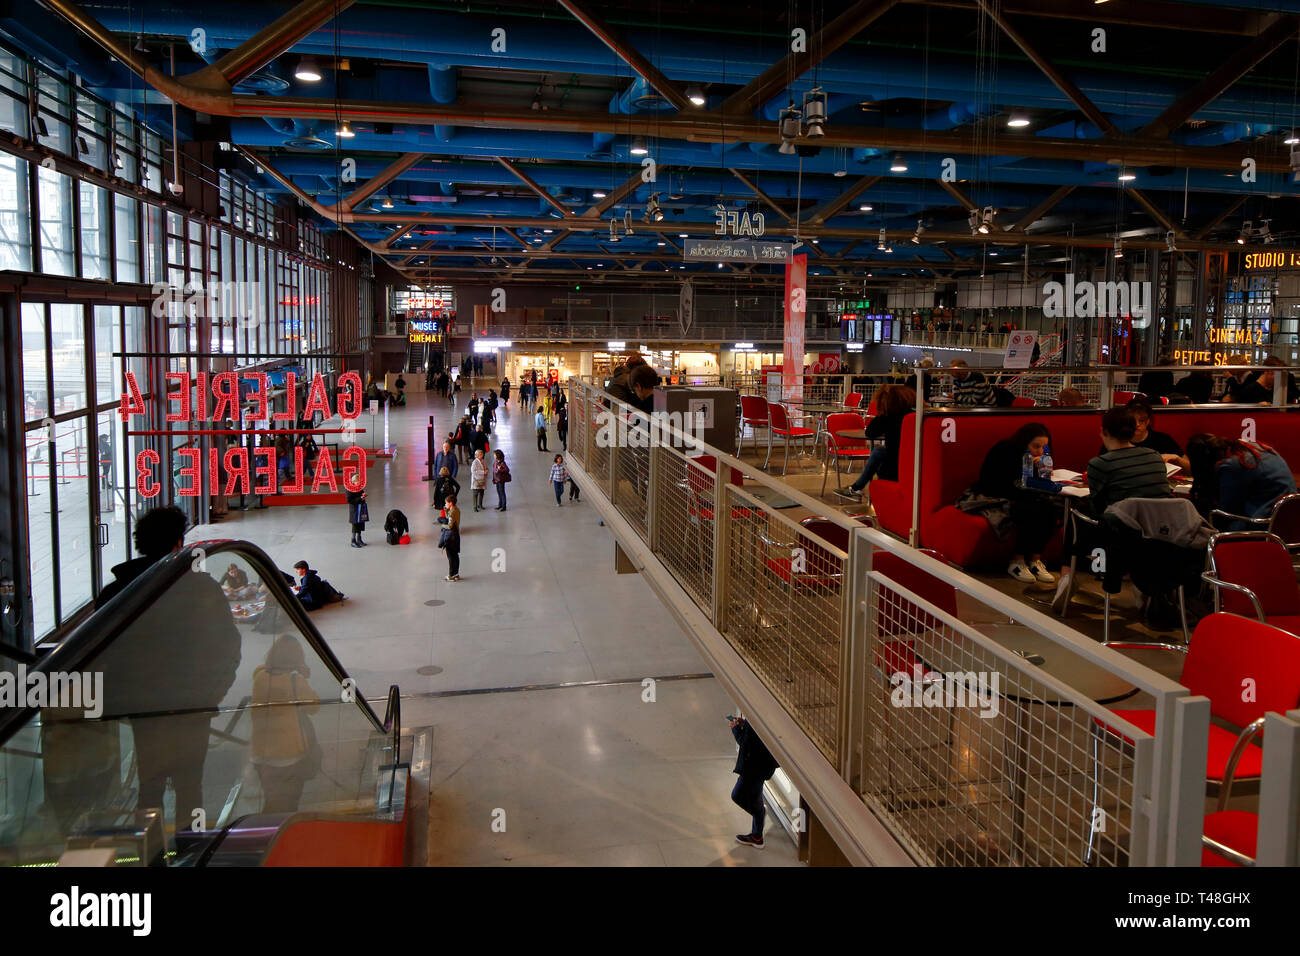 Inside the Centre Pompidou art museum, Paris, France. Stock Photo